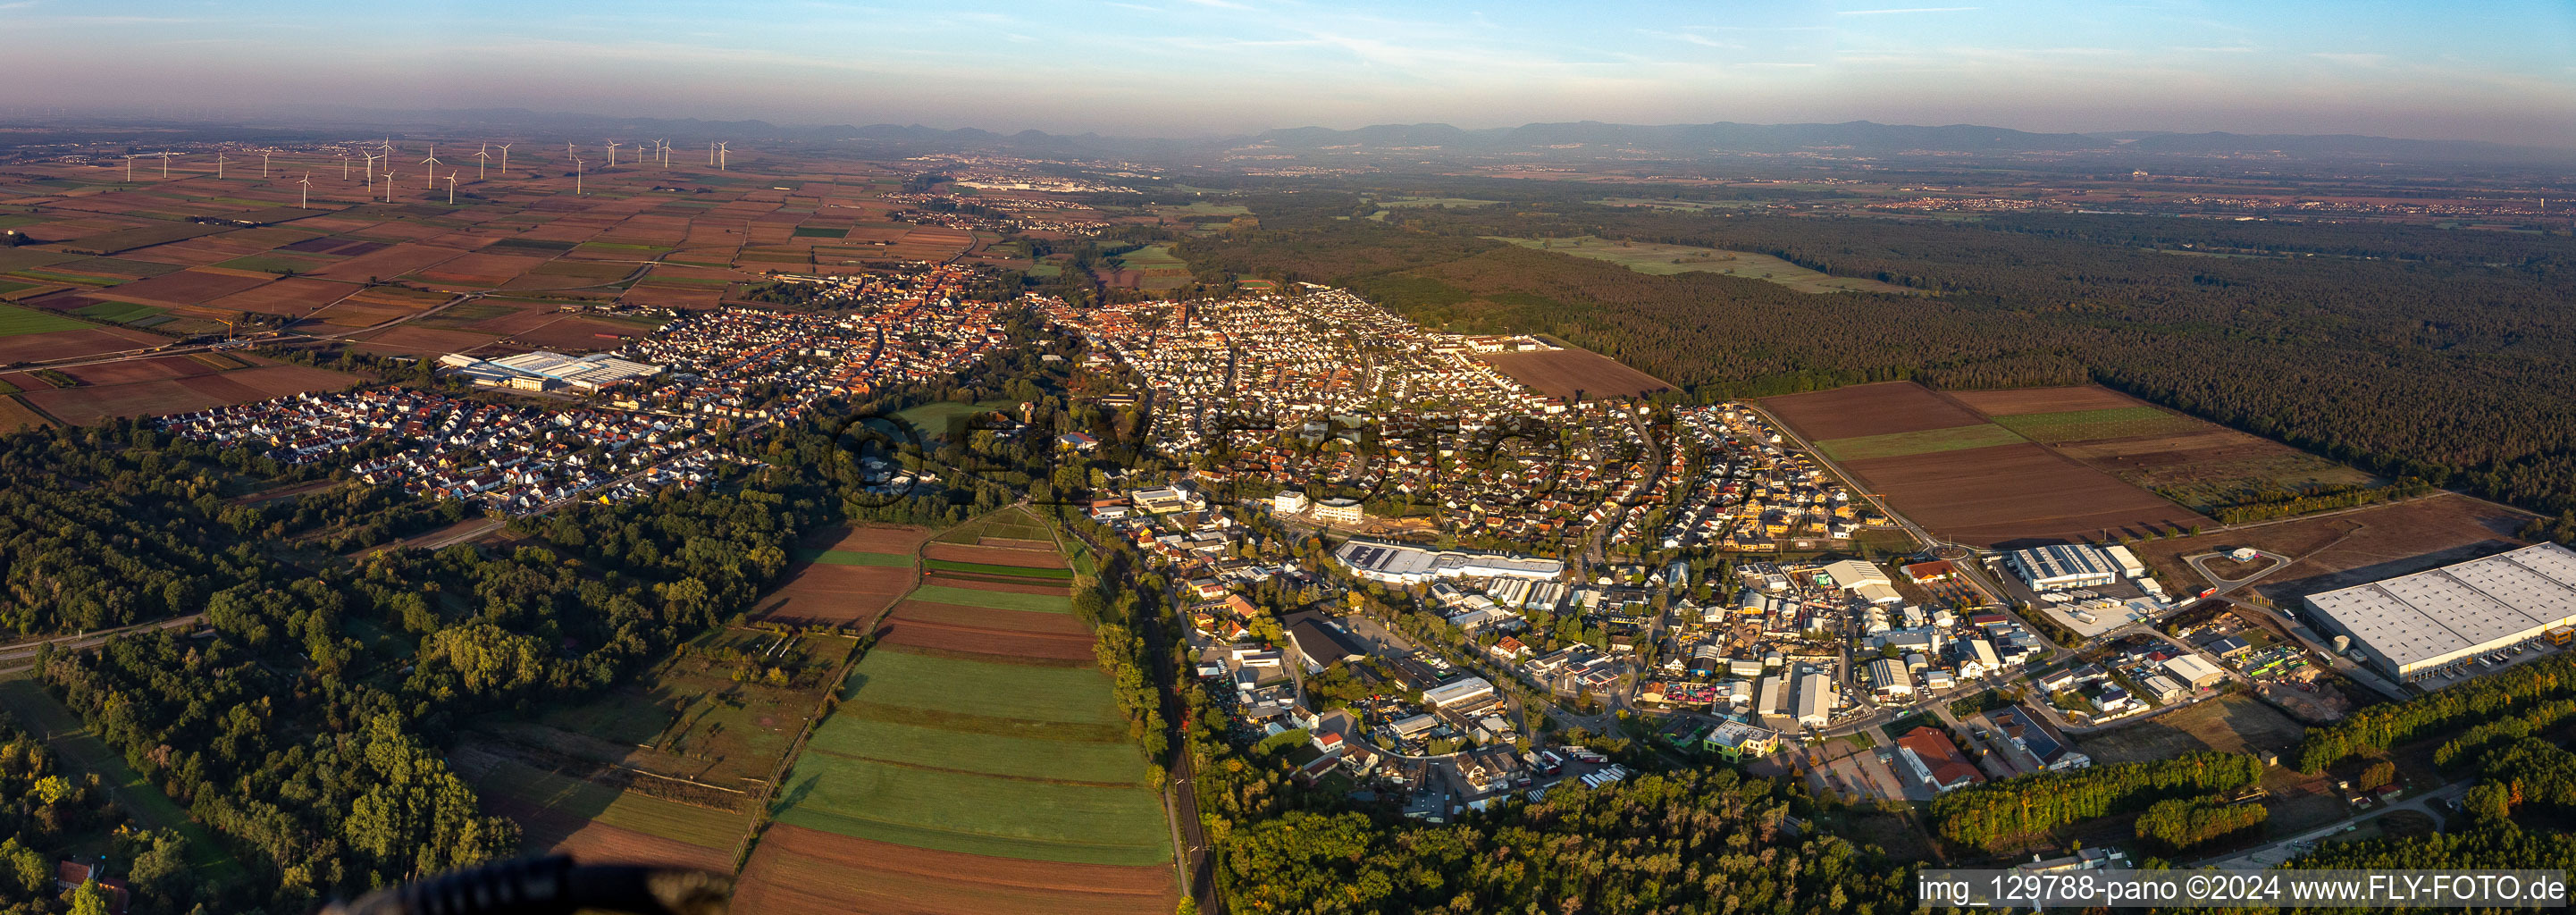 Panorama - Perspektive des Stadtgebiet mit Außenbezirken und Innenstadtbereich in Bellheim im Bundesland Rheinland-Pfalz, Deutschland